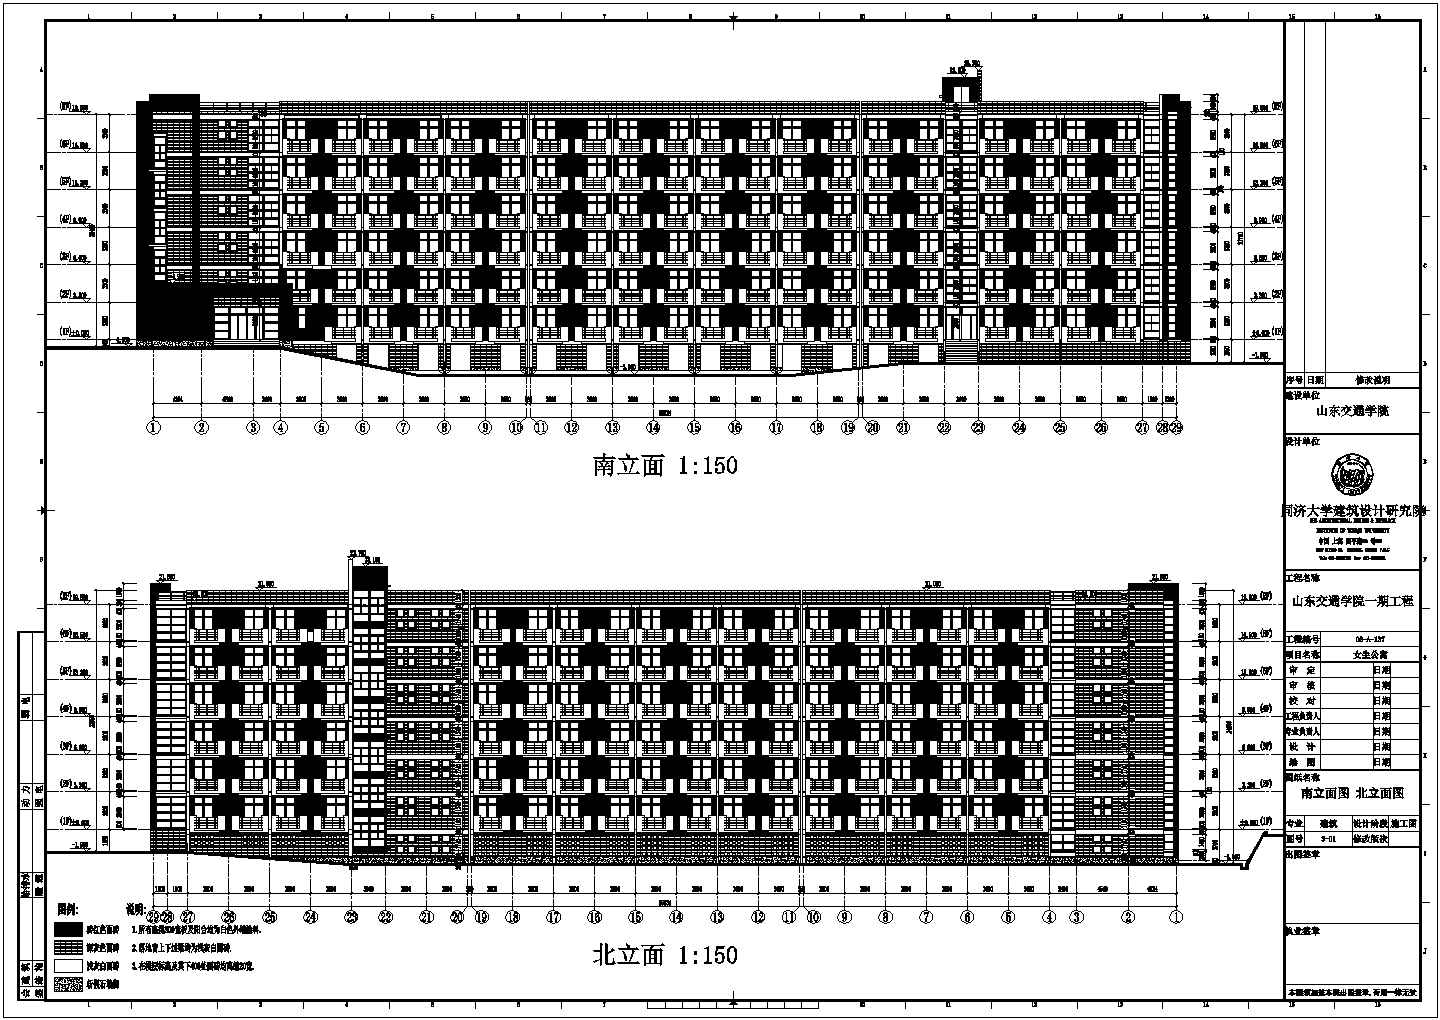 【山东】某交通学院女生宿舍建筑结构水暖电施工图